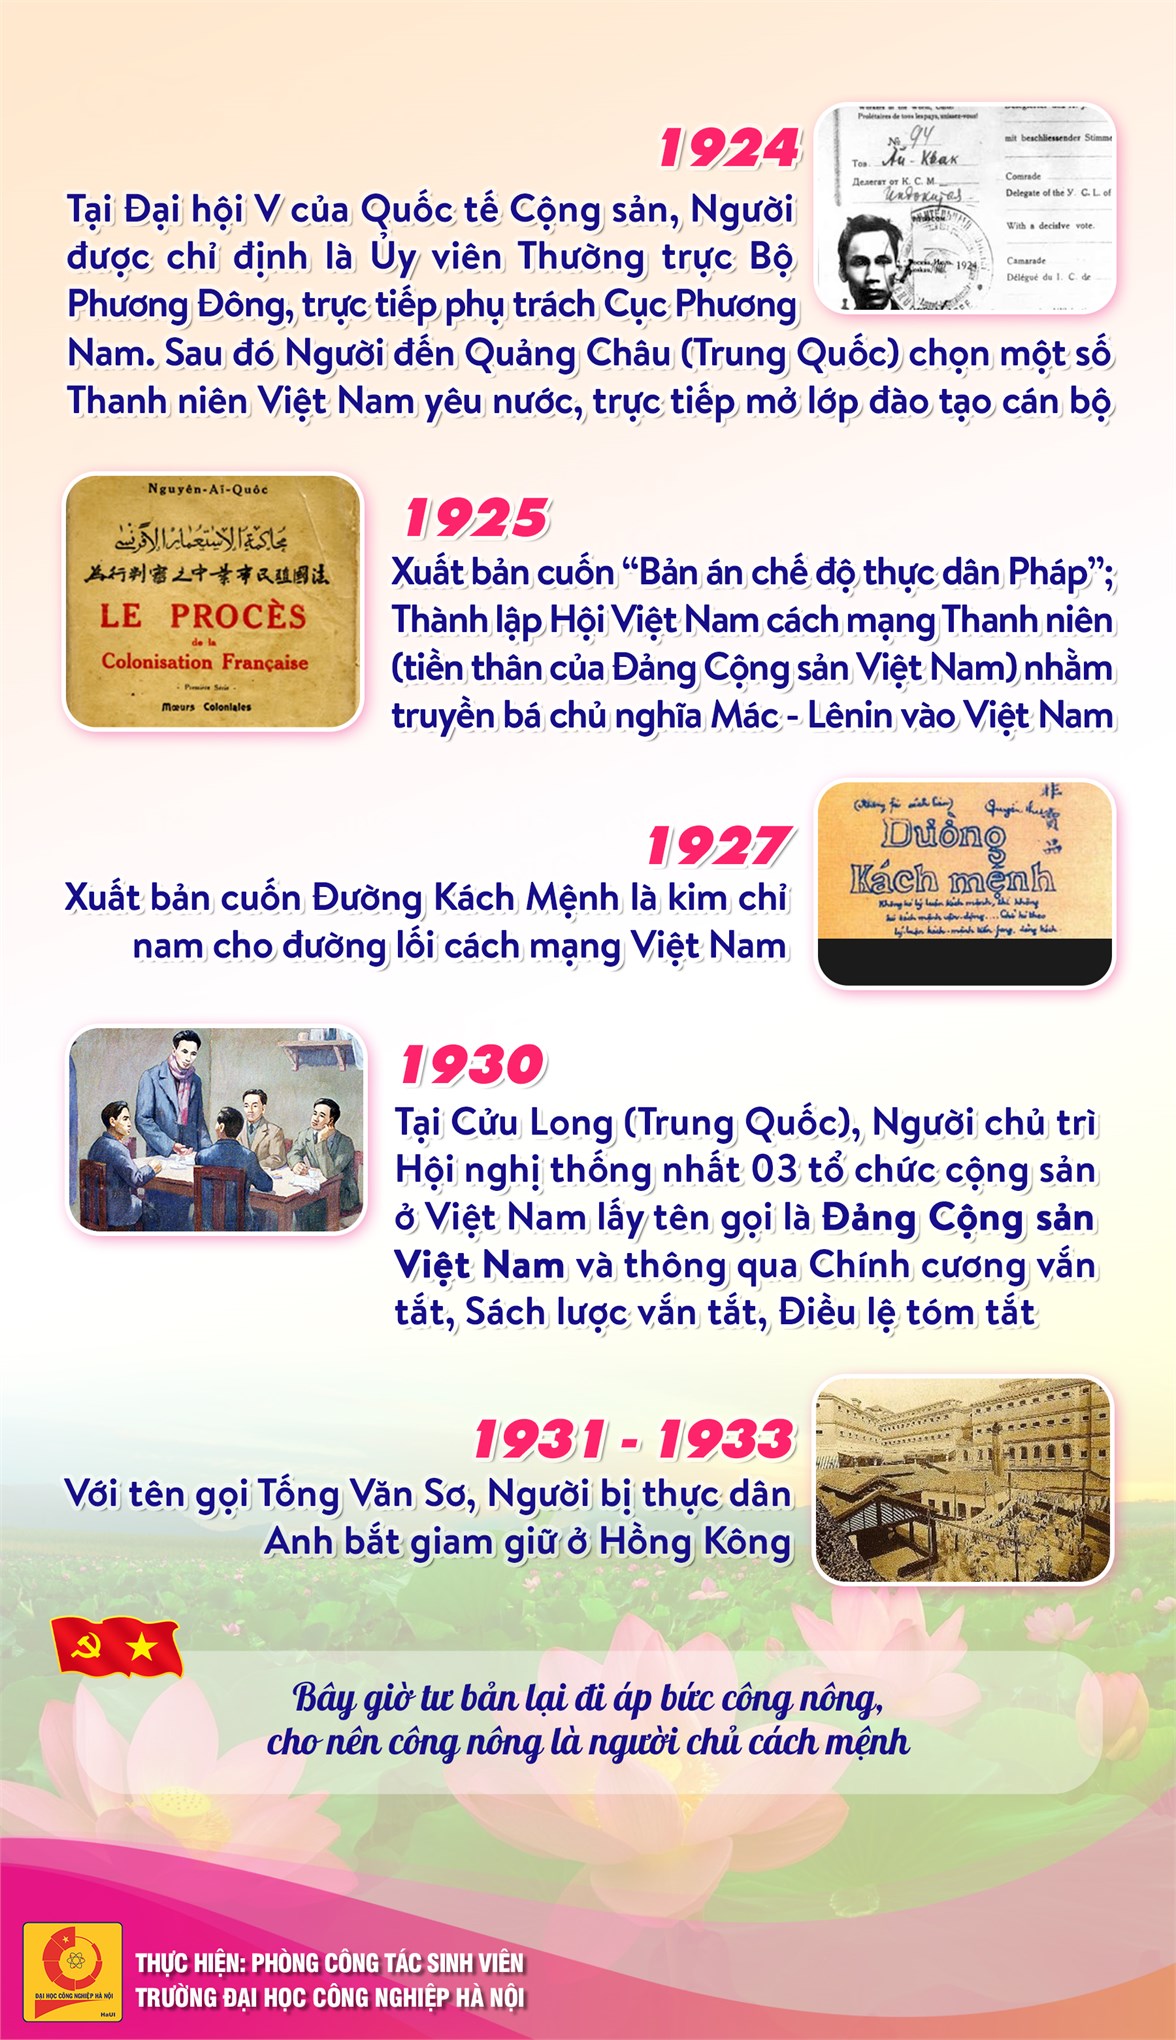 Chủ tịch Hồ Chí Minh - Anh hùng giải phóng dân tộc, Danh nhân văn hóa thế giới